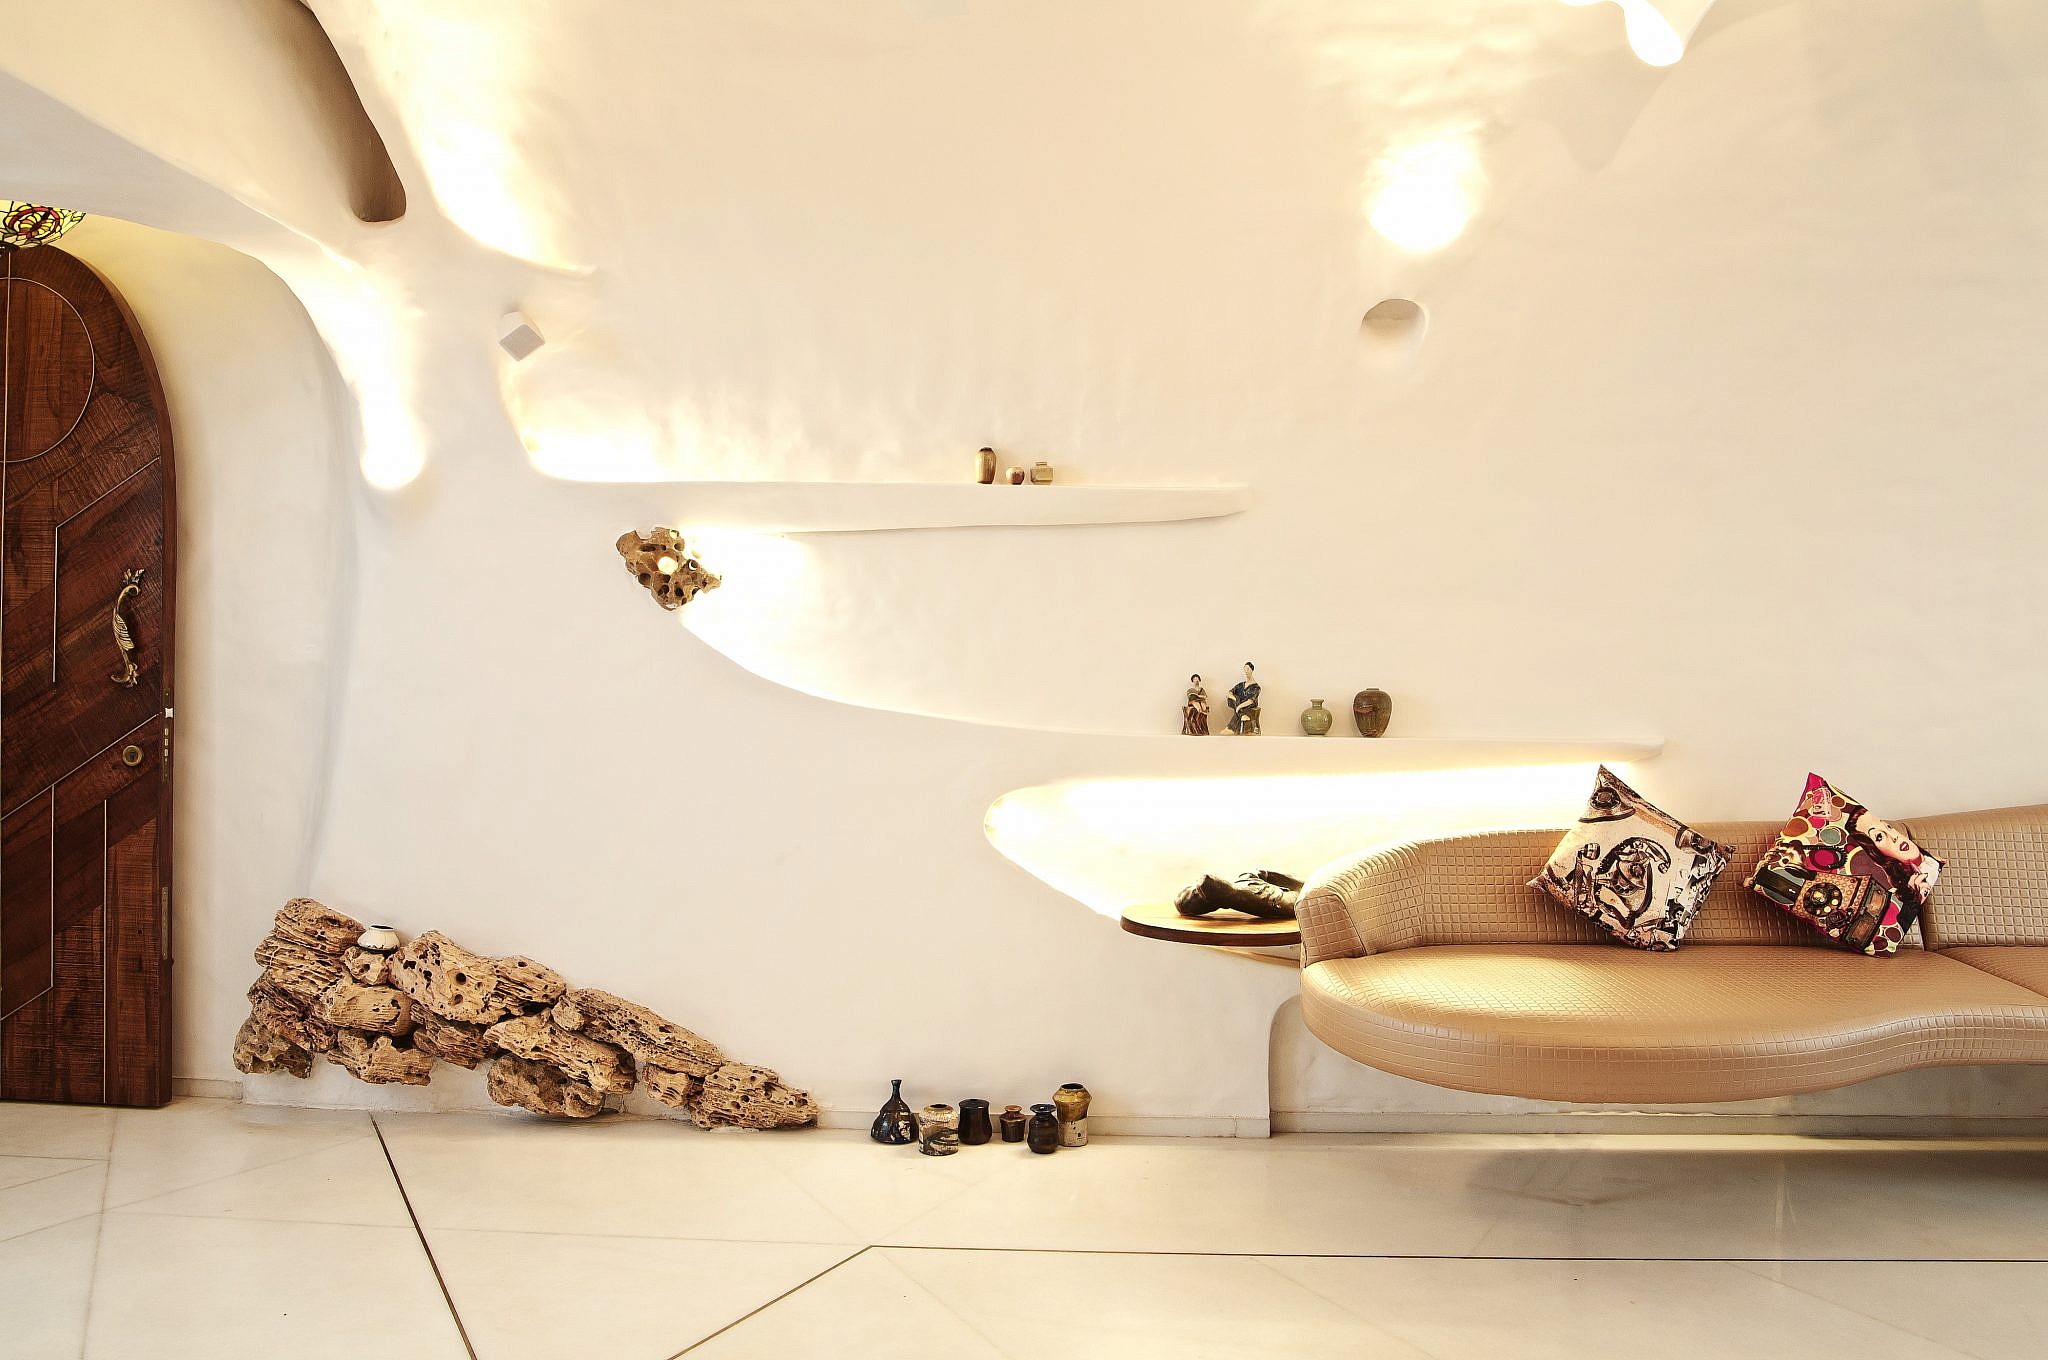 אדריכלות ועיצוב: The White Room Studio | צילום: Sameer Tawde